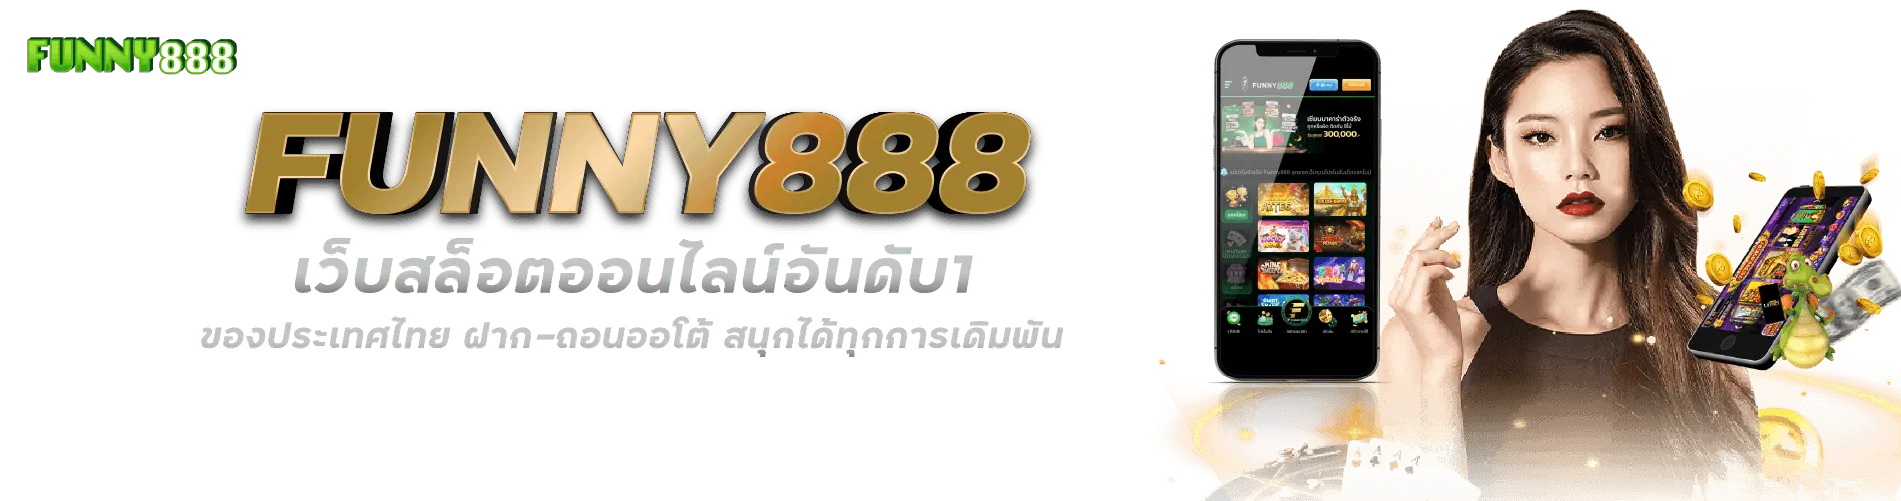 FUNNY888 คาสิโนเว็บตรง อันดับ1 ของประเทศไทย ฝาก-ถอนออโต้ ครบทุกการเดิมพัน